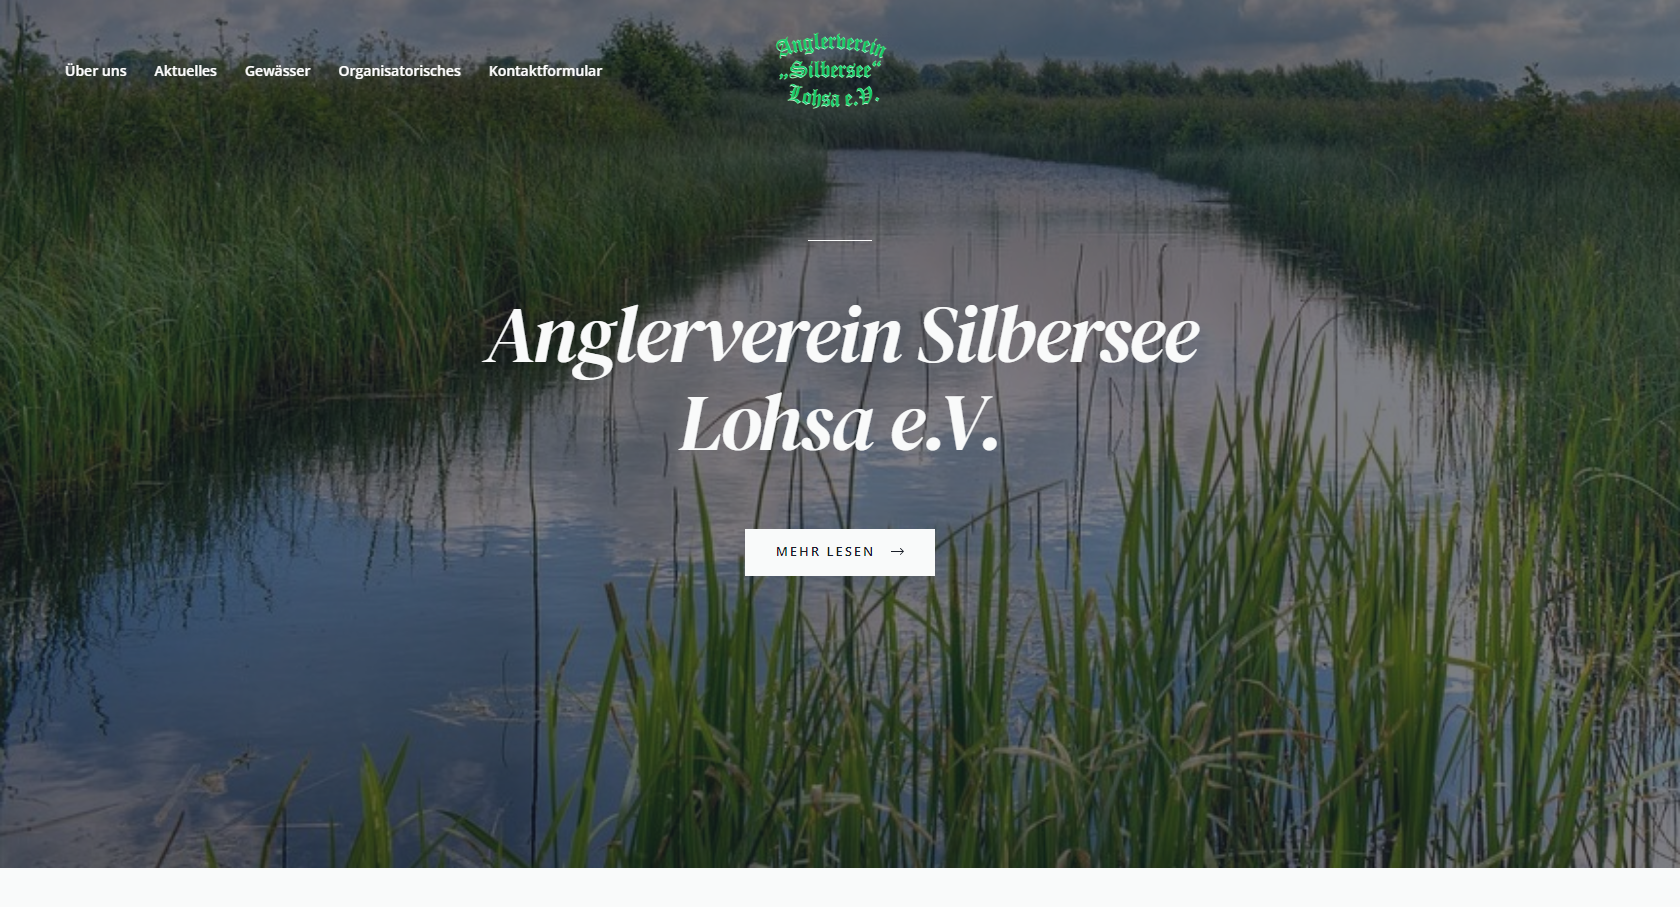 anglerverein-homepage-erstellung-av-silbersee-lohsa-ev-webdesign-verein